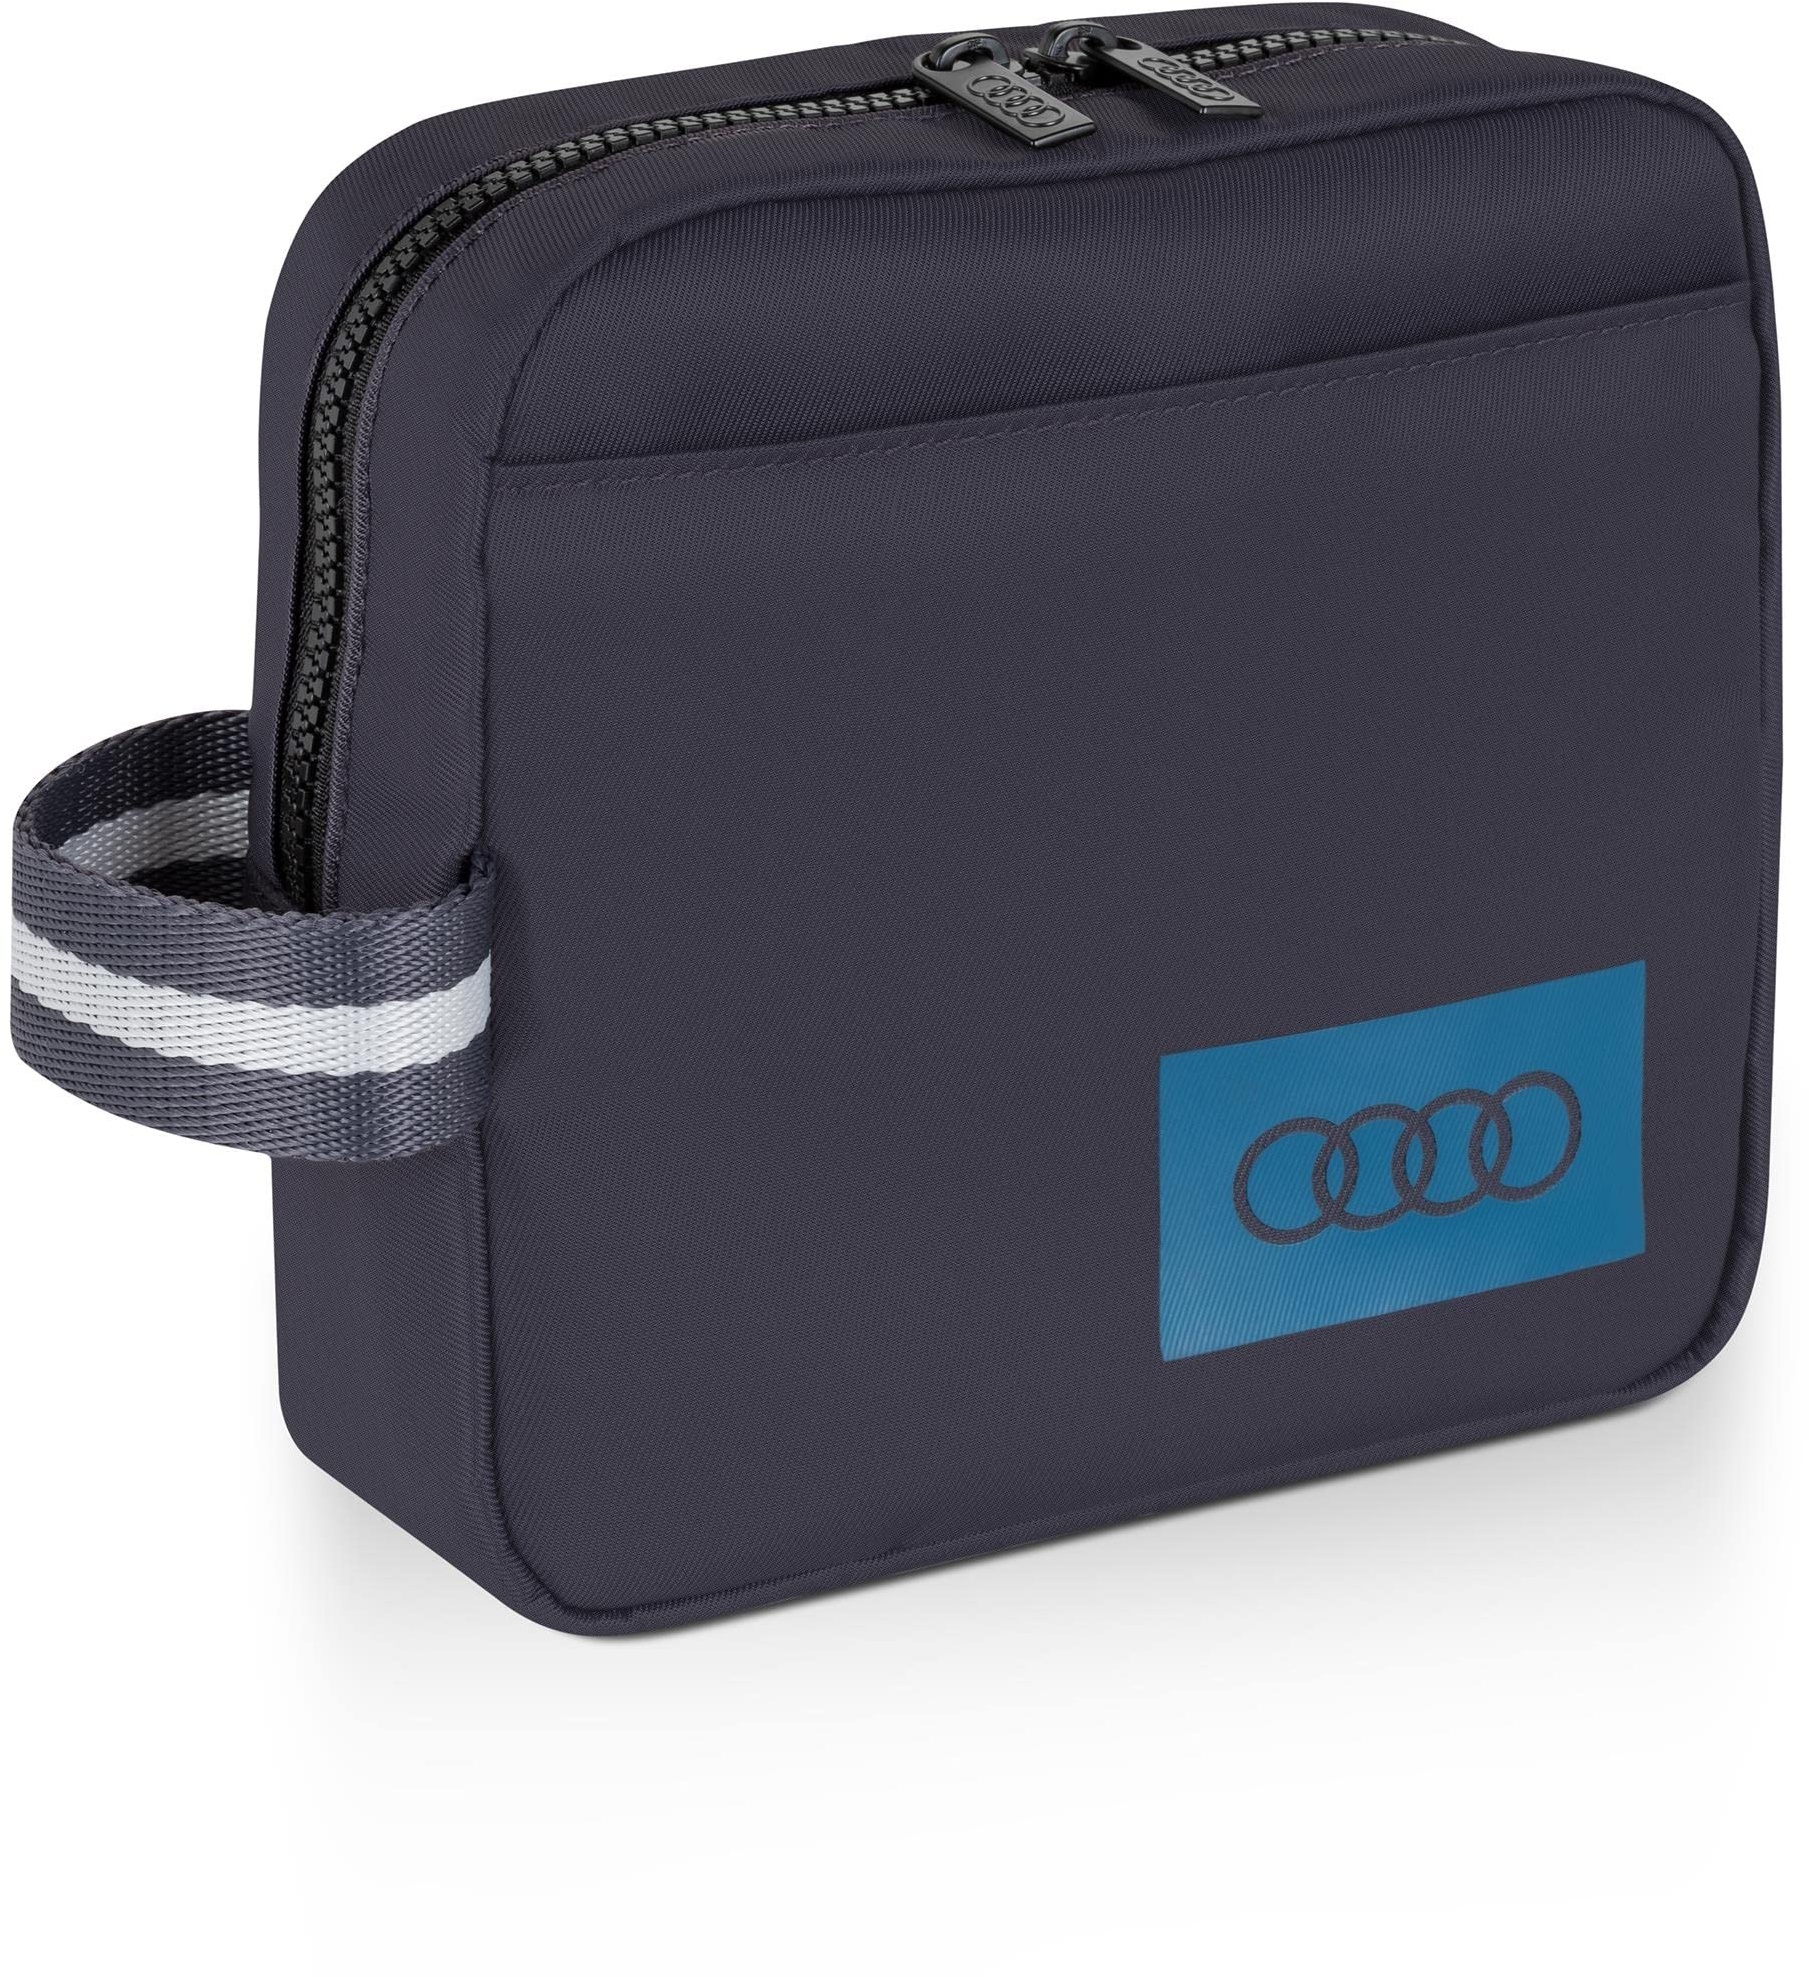 Audi 3152300300 Utilitytasche Utensilientasche Tasche, mit Audi Ringe Logo, grau